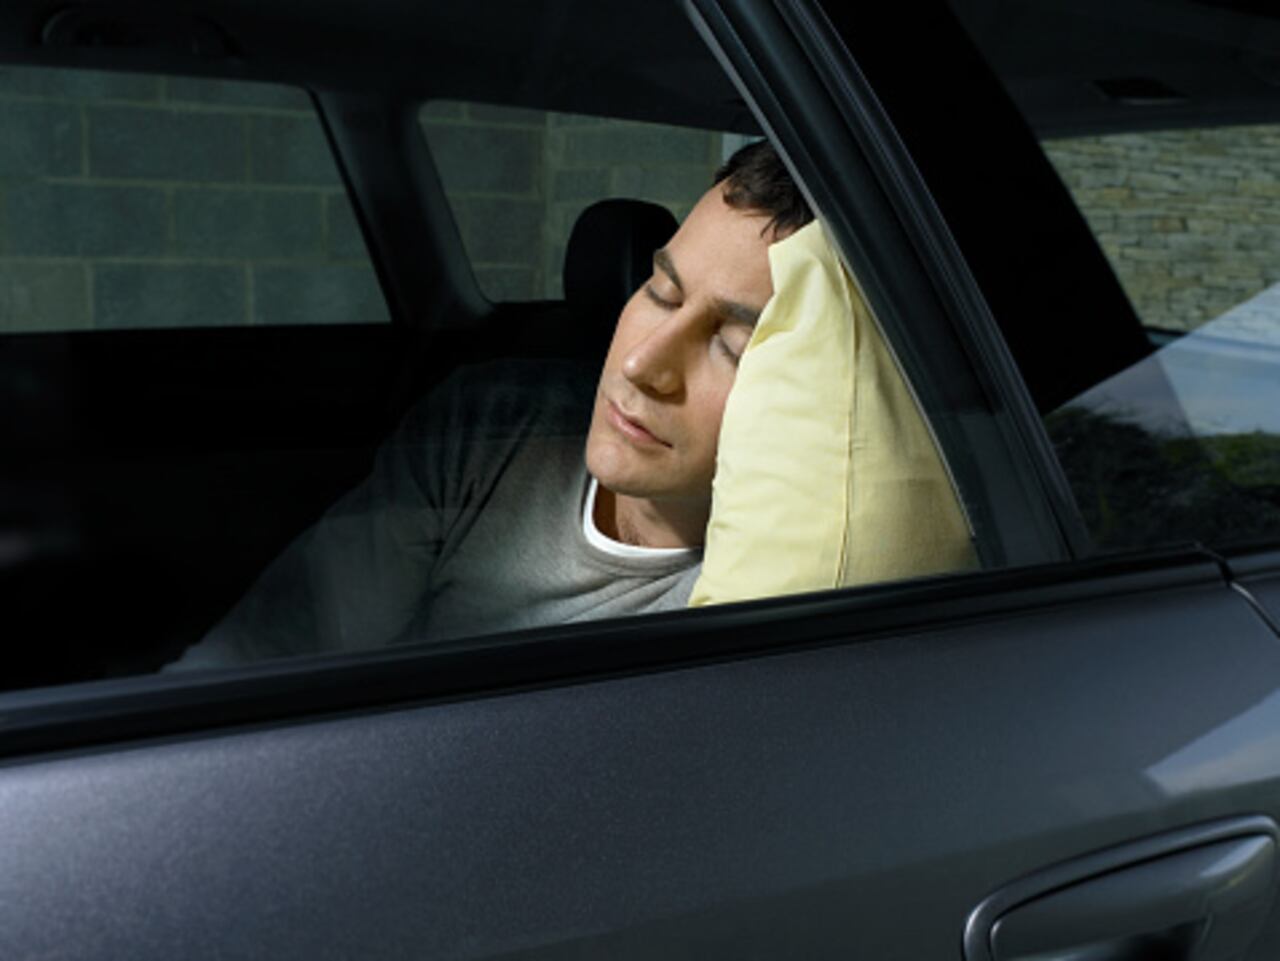 Dormir en un automóvil con las ventanas cerradas puede presentar una serie de riesgos para la salud y la seguridad.